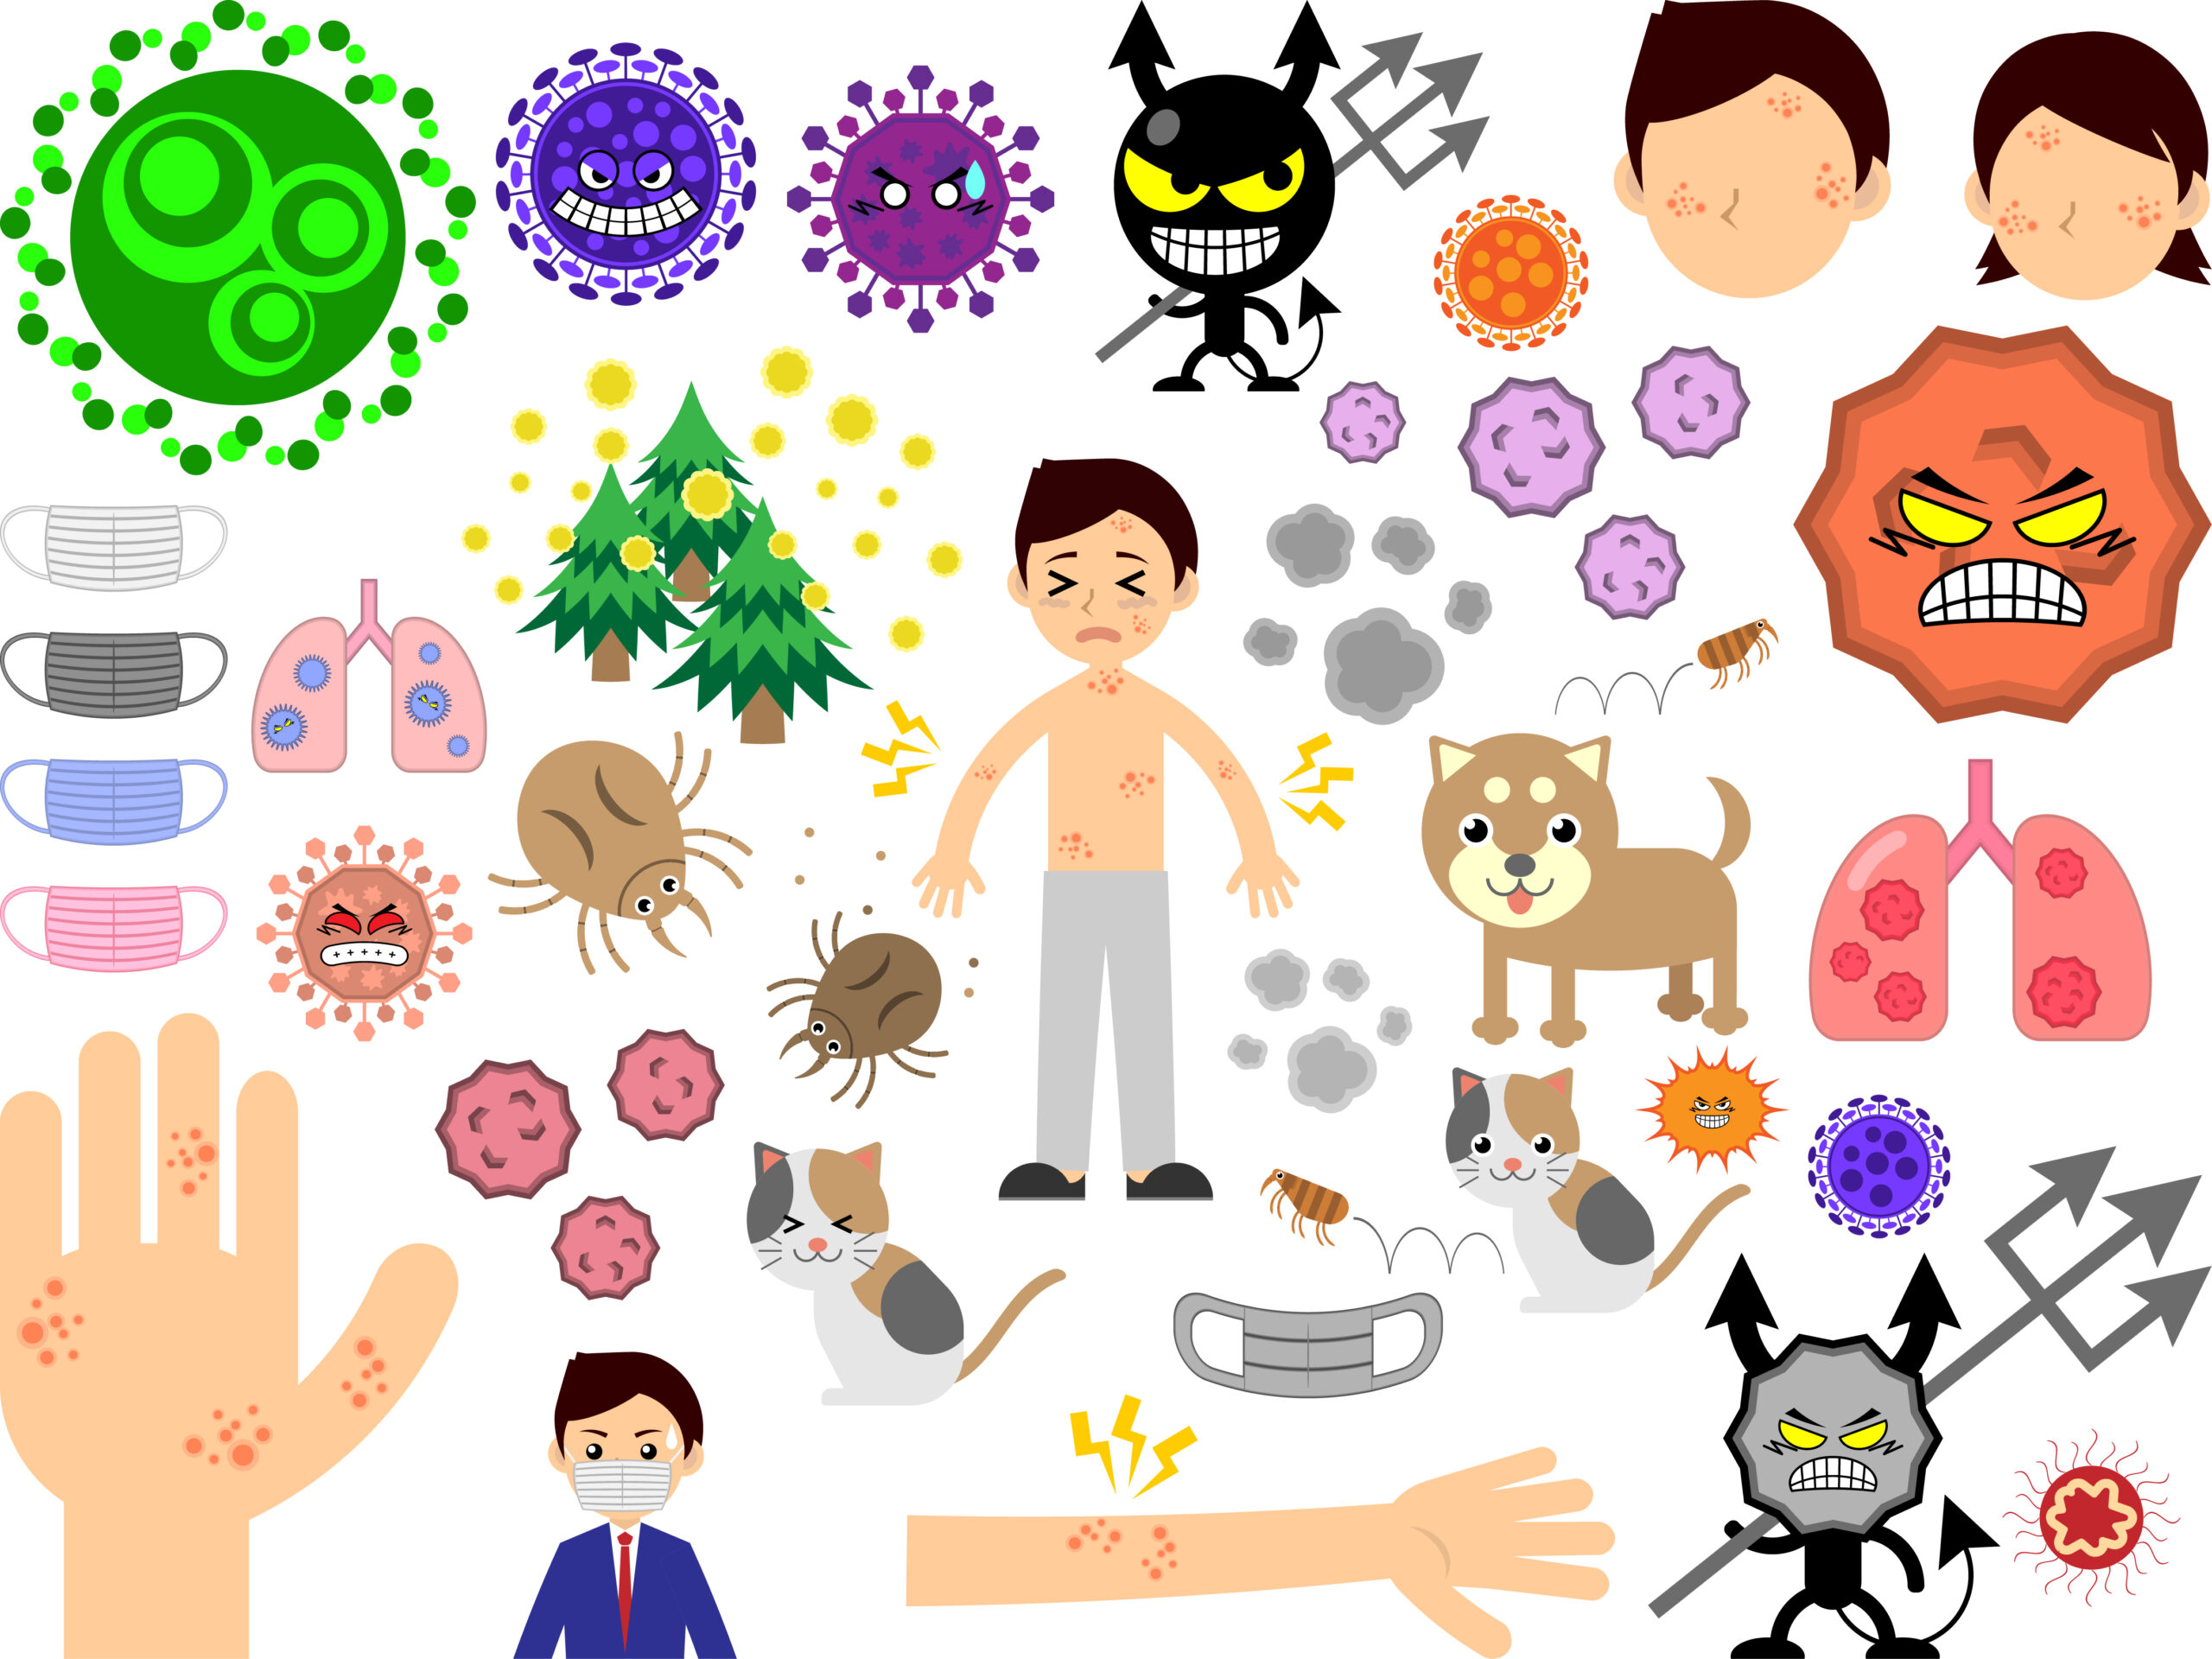 アレルギー反応を引き起こす原因物質一覧